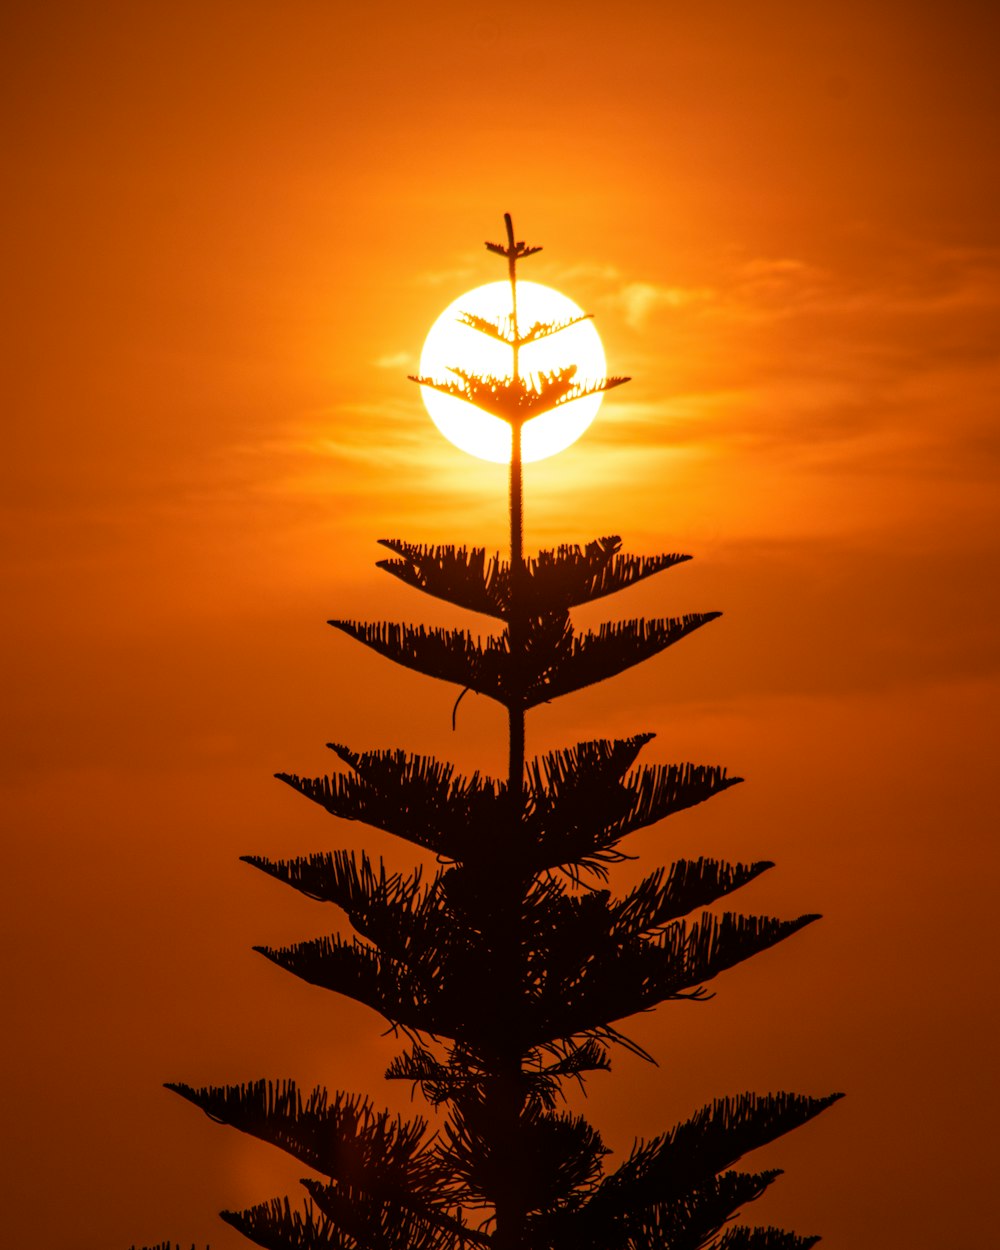 El sol se está poniendo detrás de un árbol alto